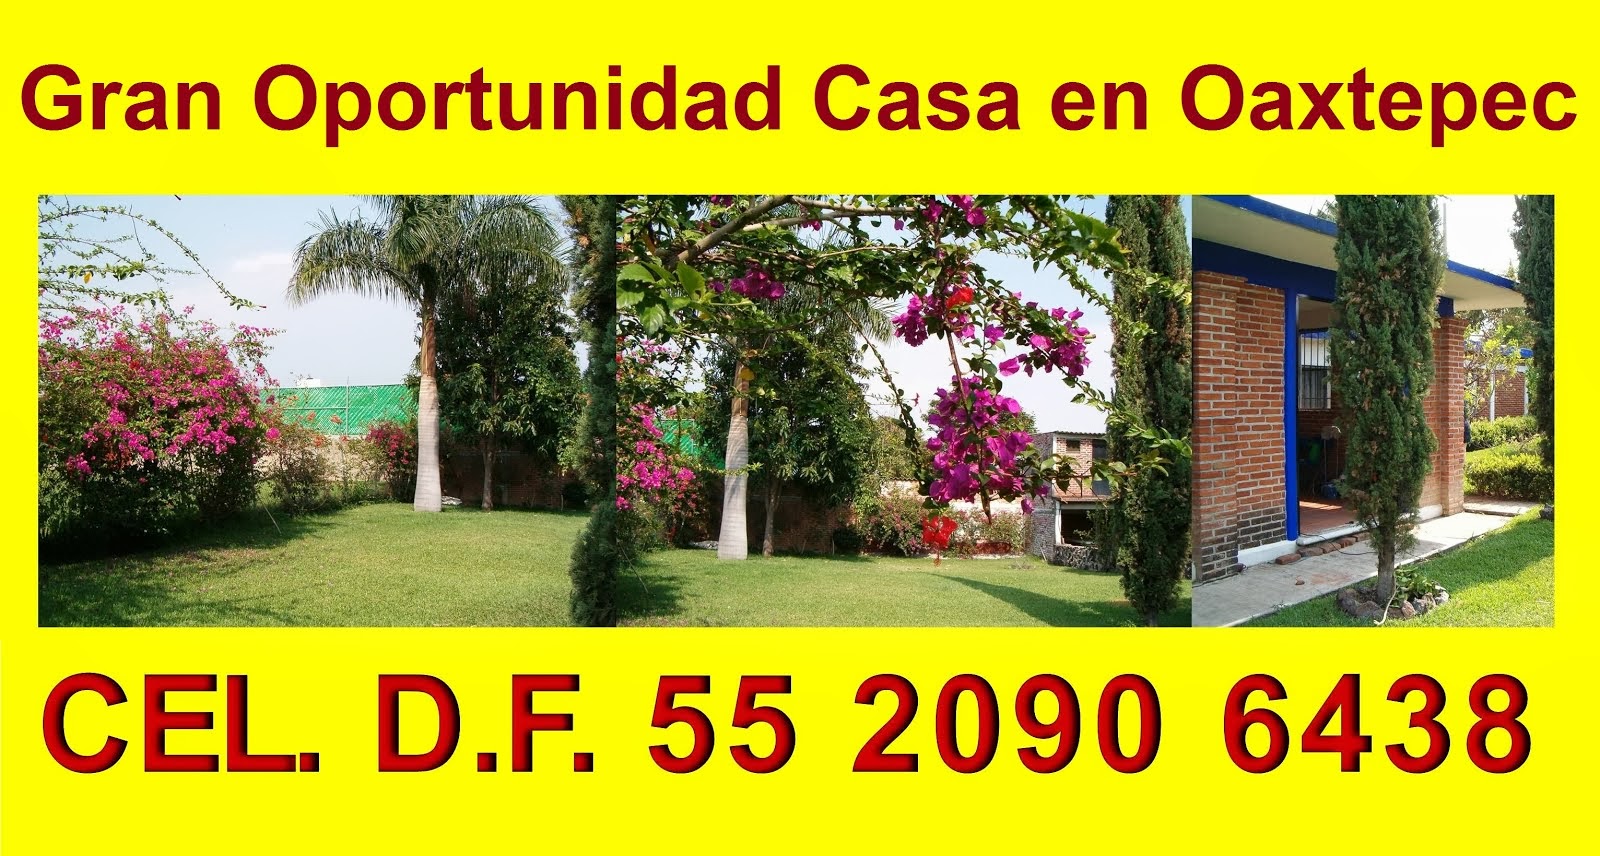 Gran Oportunidad Casa en Oaxtepec